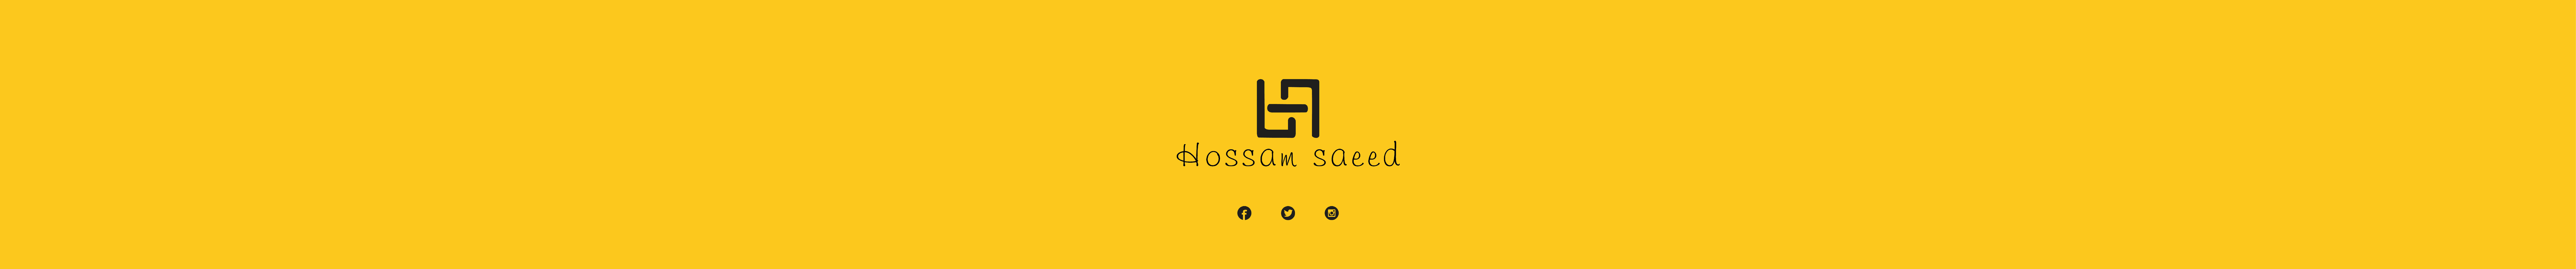 Profil-Banner von Hossam saeed